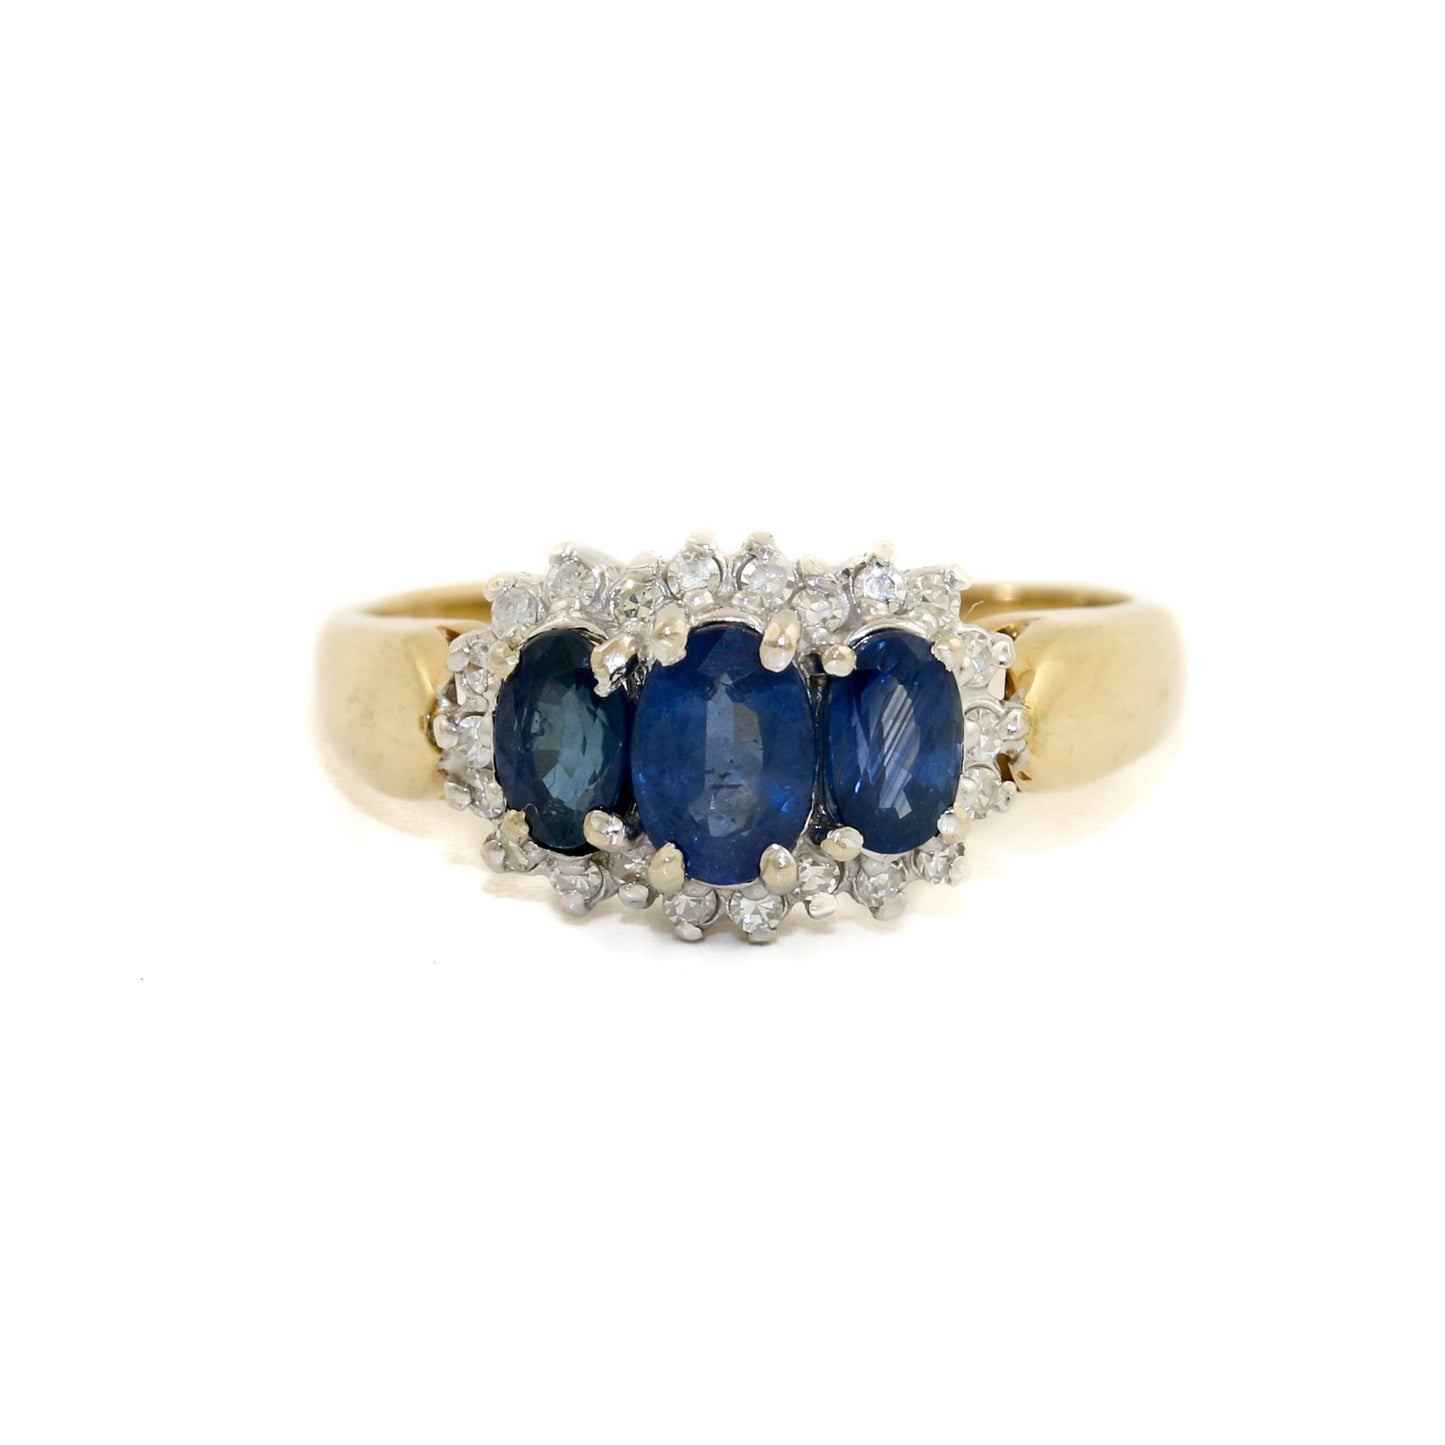 Magnificent 14k Gold x Sapphire & Diamond Ring - Kingdom Jewelry